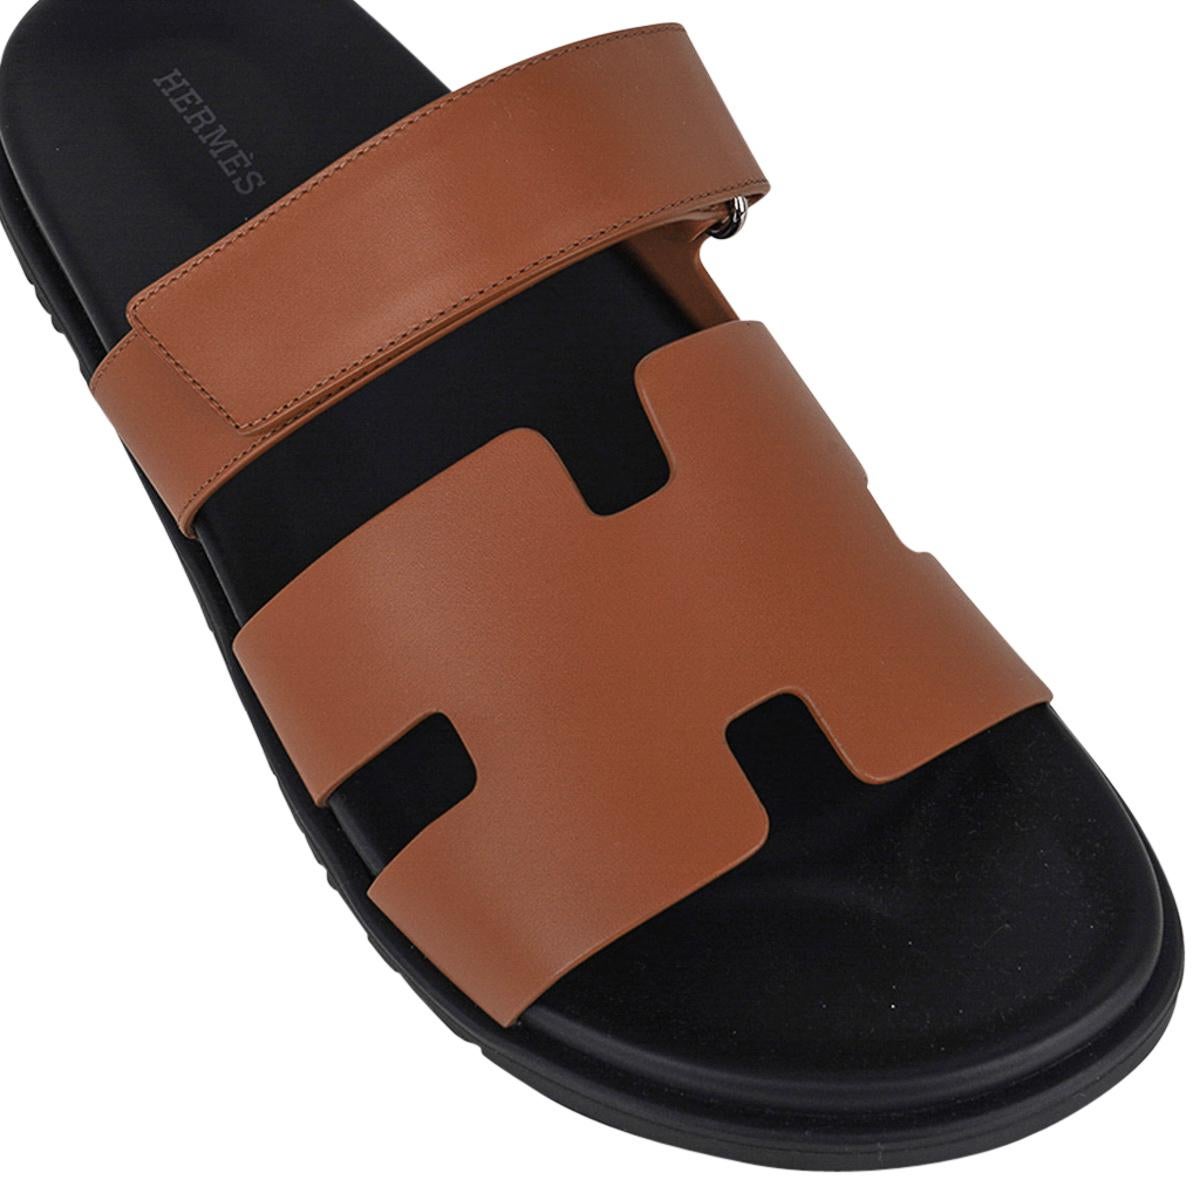 Mightychic bietet eine Chypre-Sandale von Hermes für Herren in der Farbe Naturel Safari an.
Kalbsleder mit schwarzer anatomischer Innensohle und schwarzer Gummisohle mit H-Prägung.
Diese bequeme und neutrale Sandale passt zu einer Vielzahl von